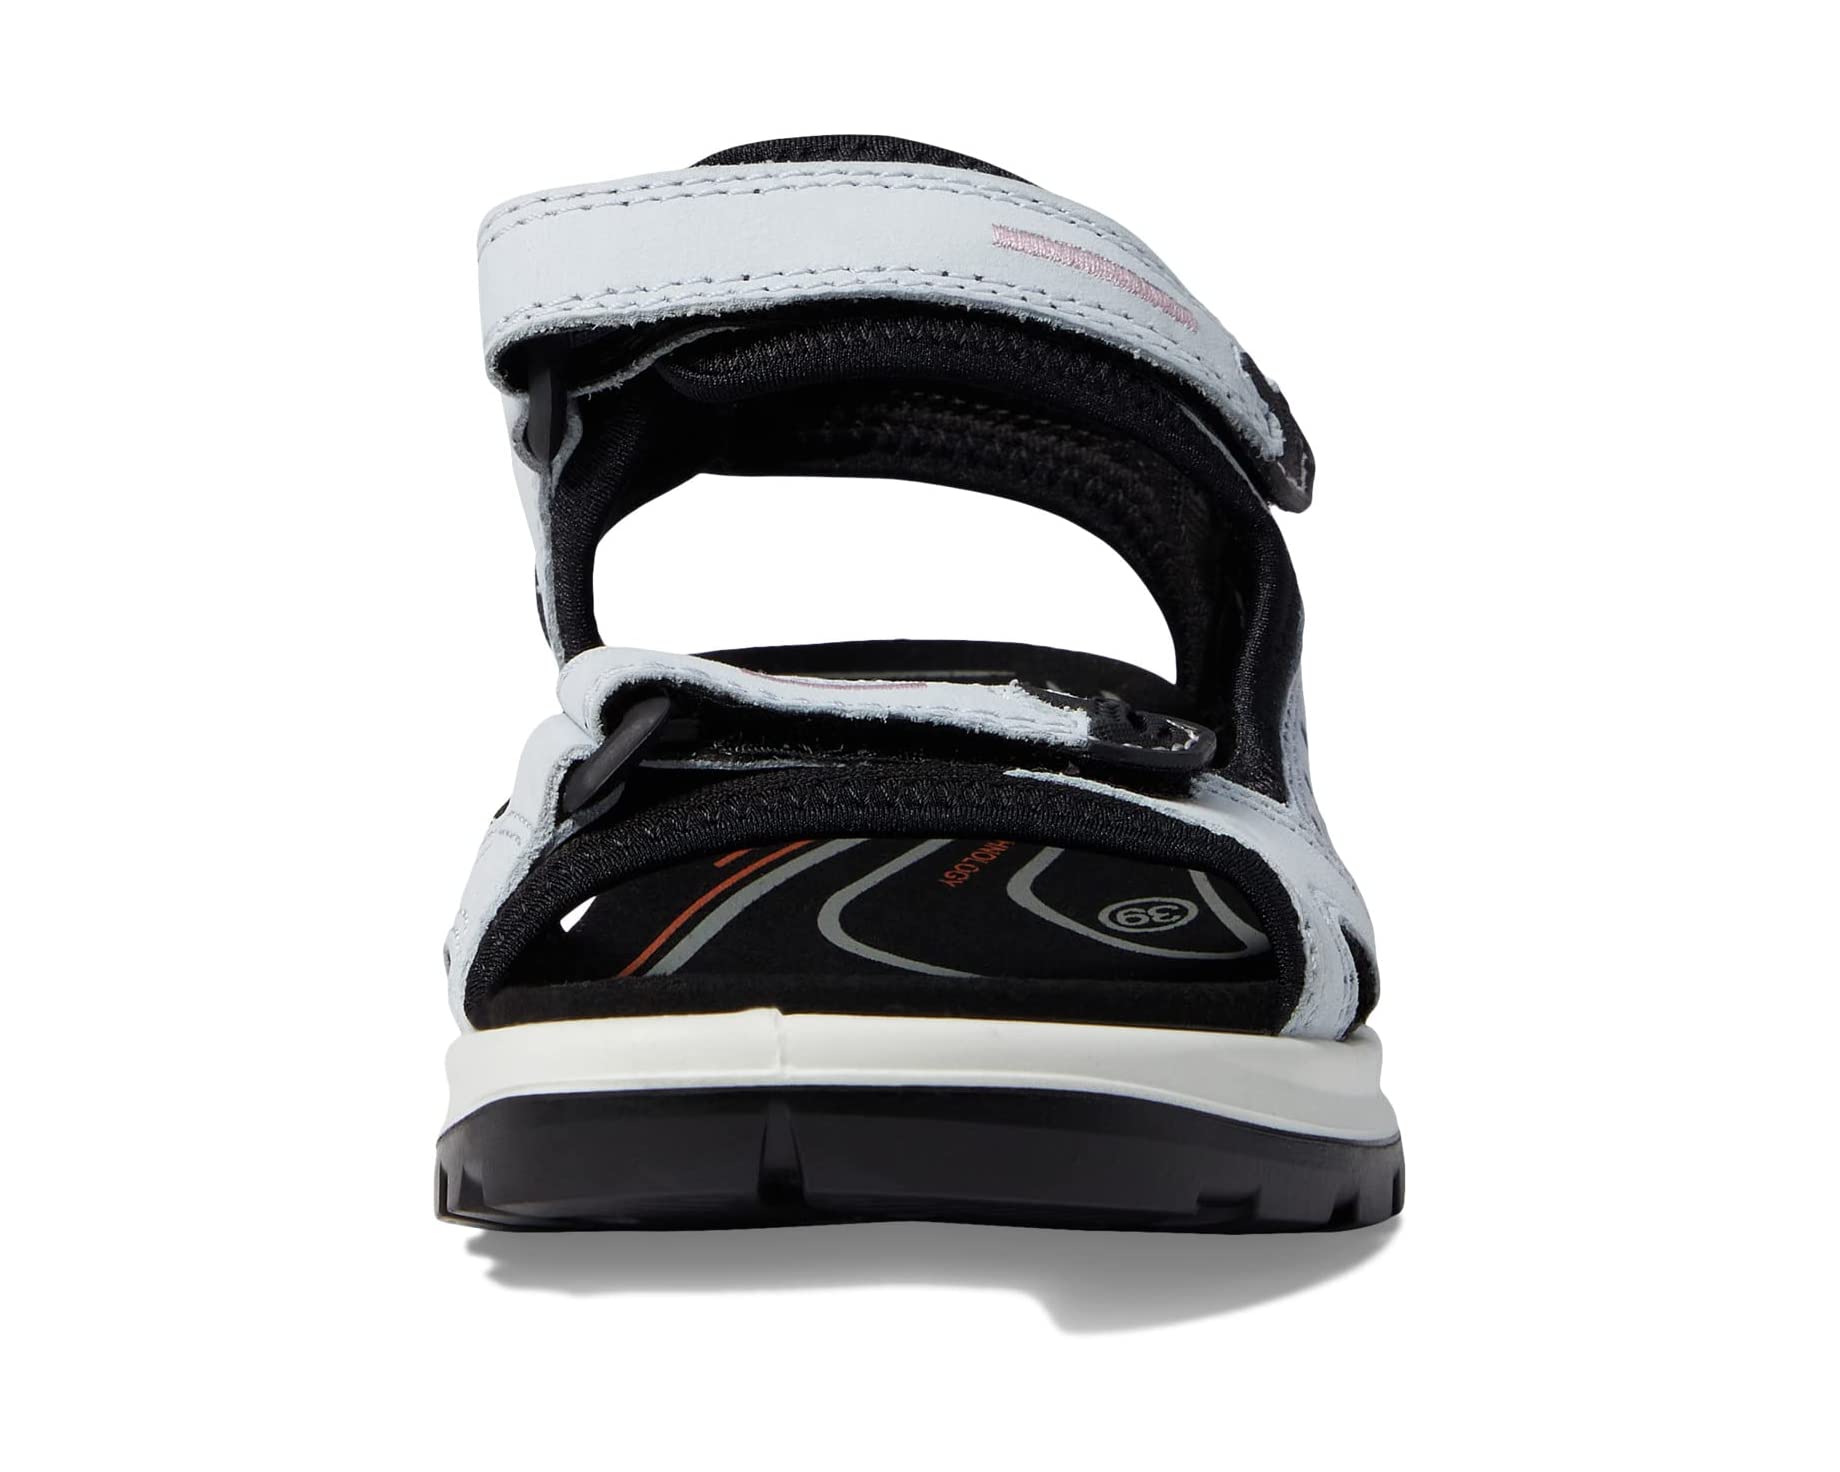 Сандалии Yucatan Sandal ECCO Sport, воздушный сандалии yucatan coast sandal ecco sport цвет black black